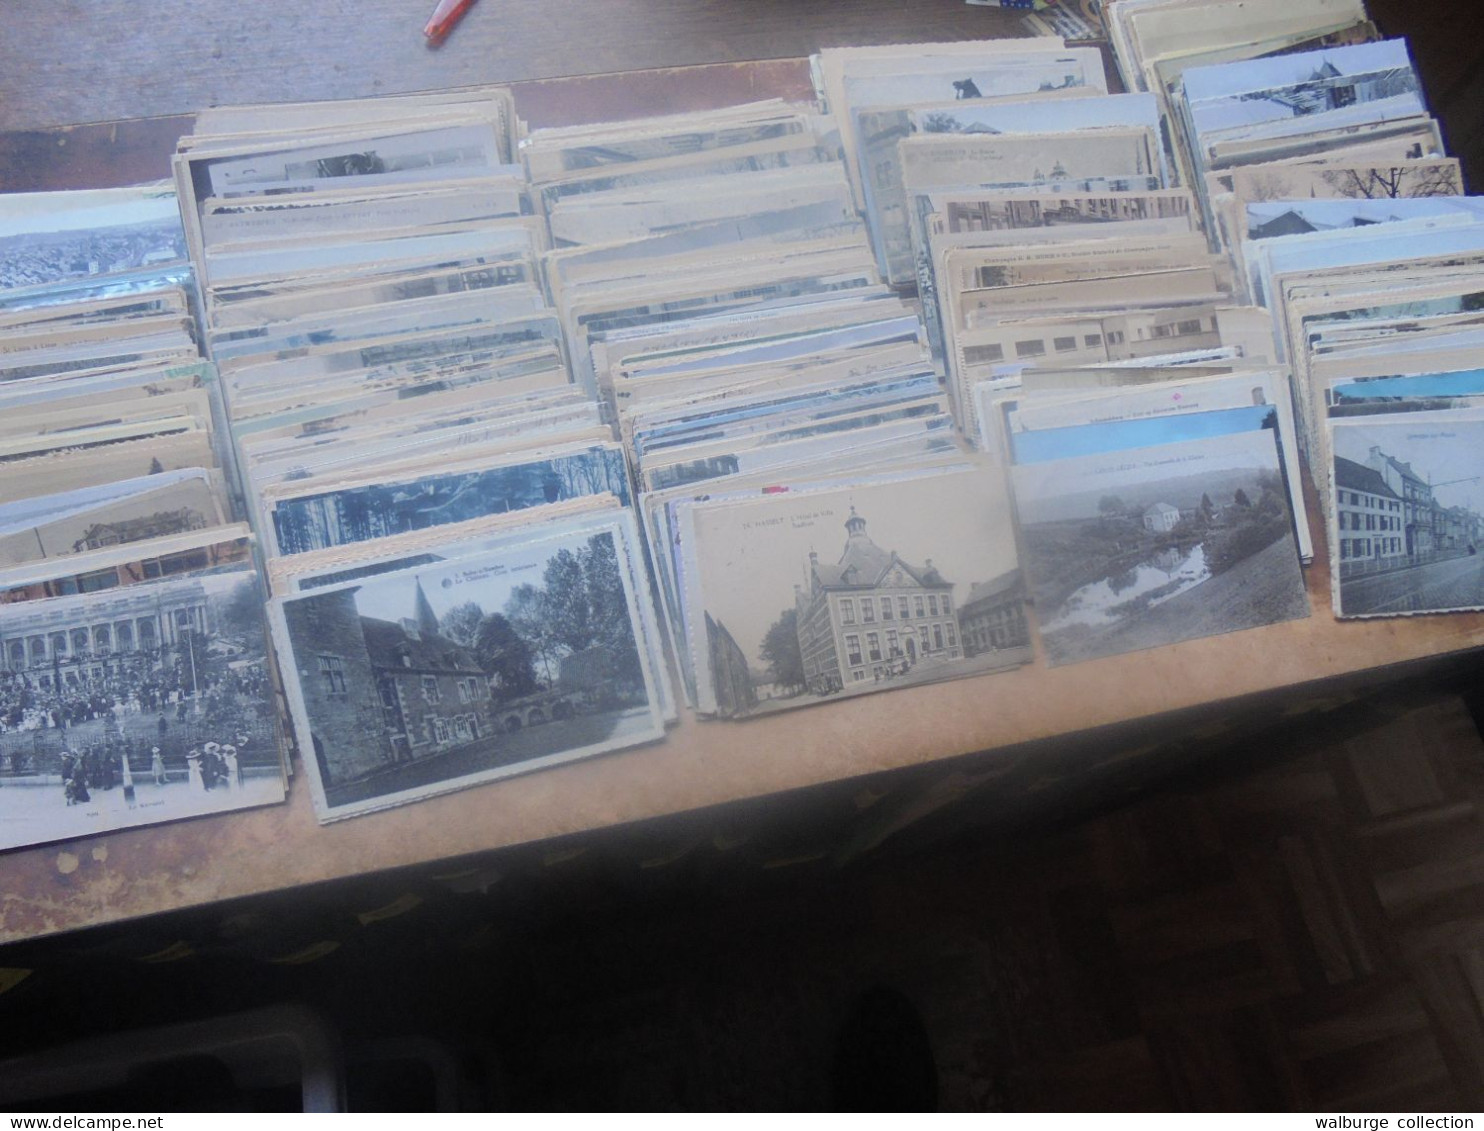 +++BELGIQUE BEAU LOT XXL ! ENVIRON 1500-1600 CARTES (Pas De Côte Belge) MAJORITES ANCIENNES+++ 4 KILOS 750 (Lire Ci-bas) - 500 Postcards Min.